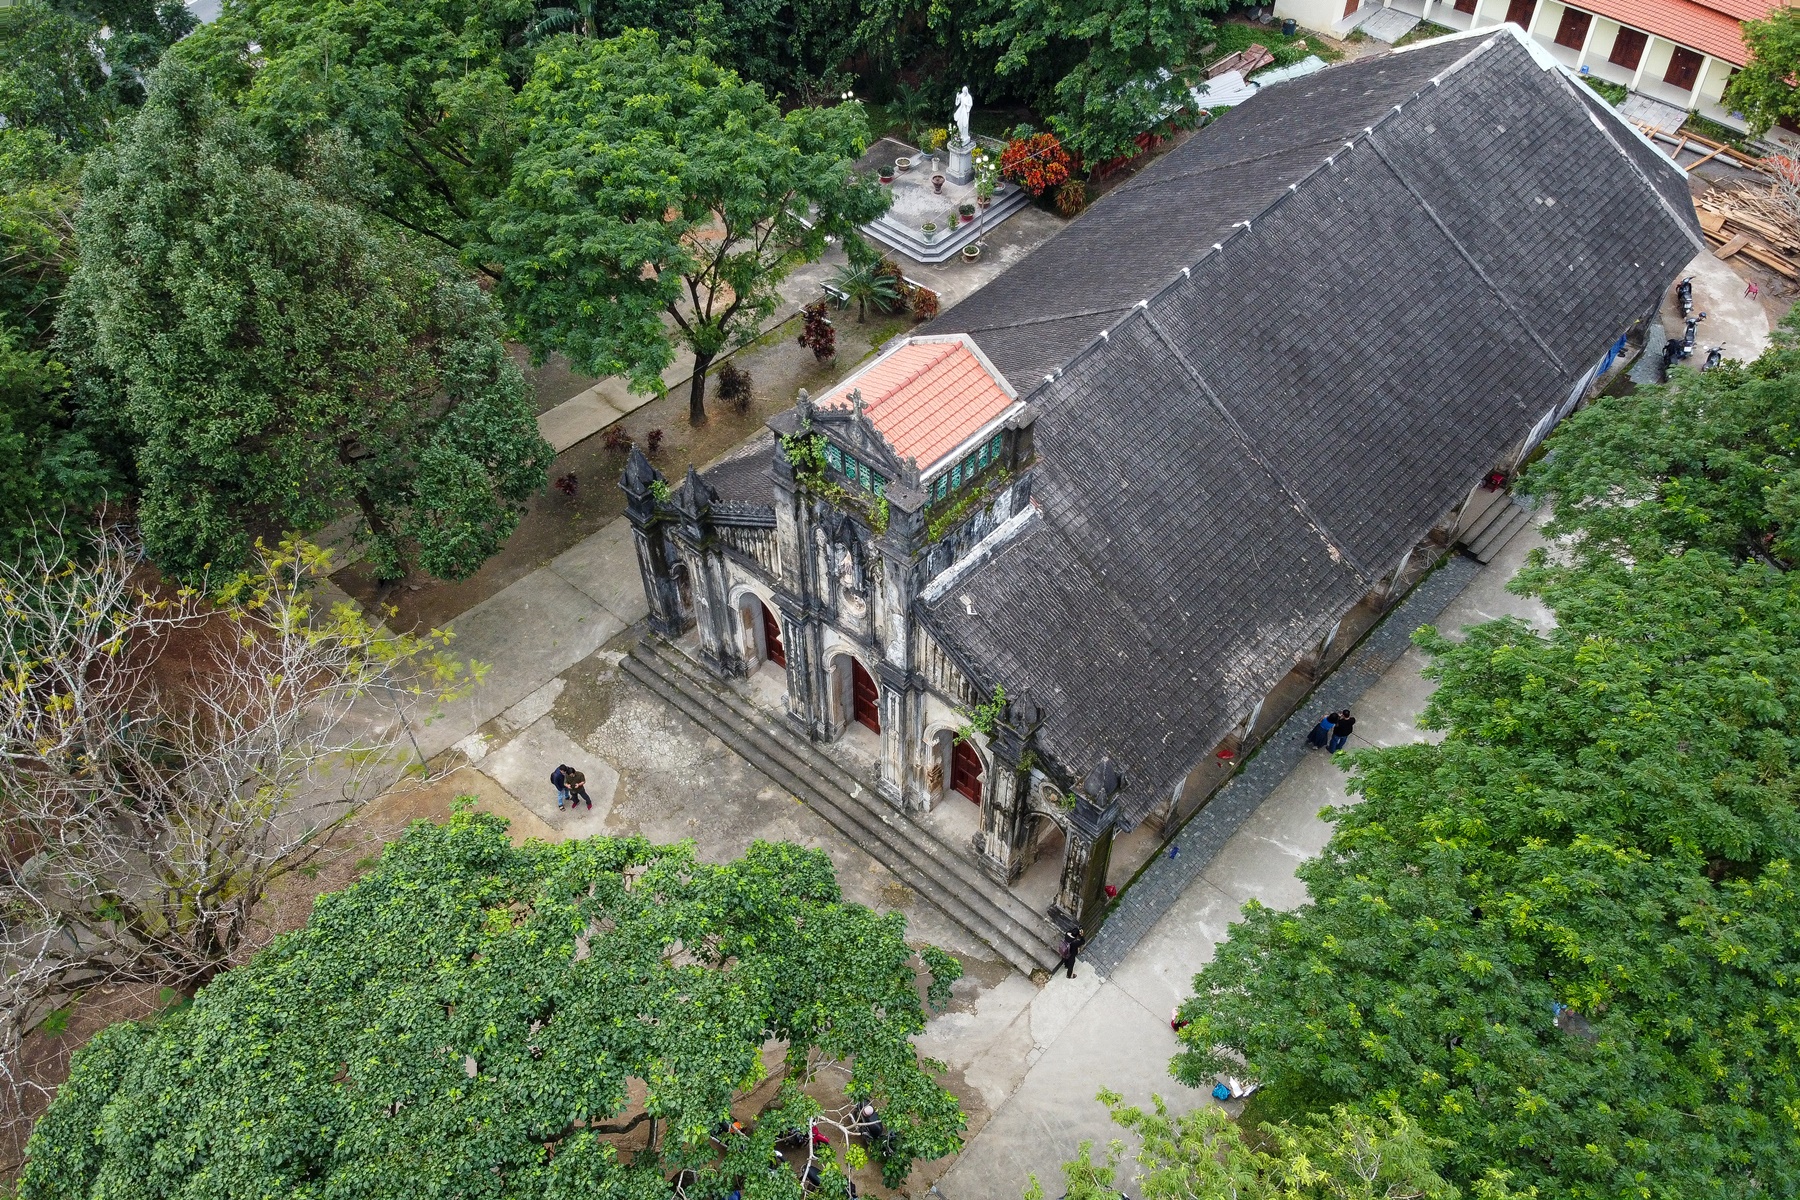 Vẻ đẹp của nhà thờ đá 120 tuổi xây bằng vỏ cây và dây tơ hồng ở Đà Nẵng - Ảnh 1.